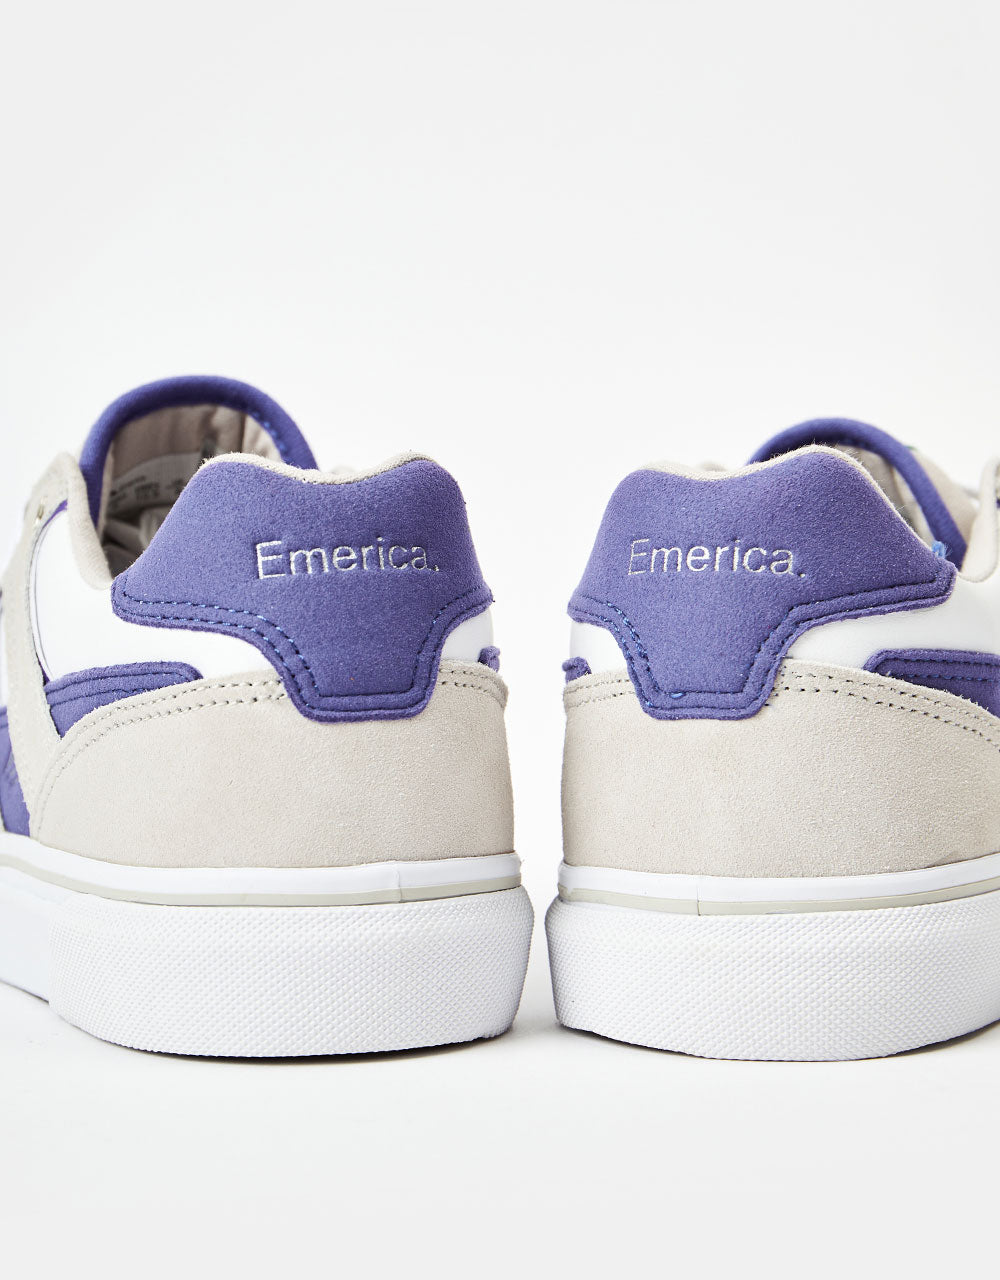 Emerica Tilt G6 Vulc Skate Shoes - Tan/White/Gum